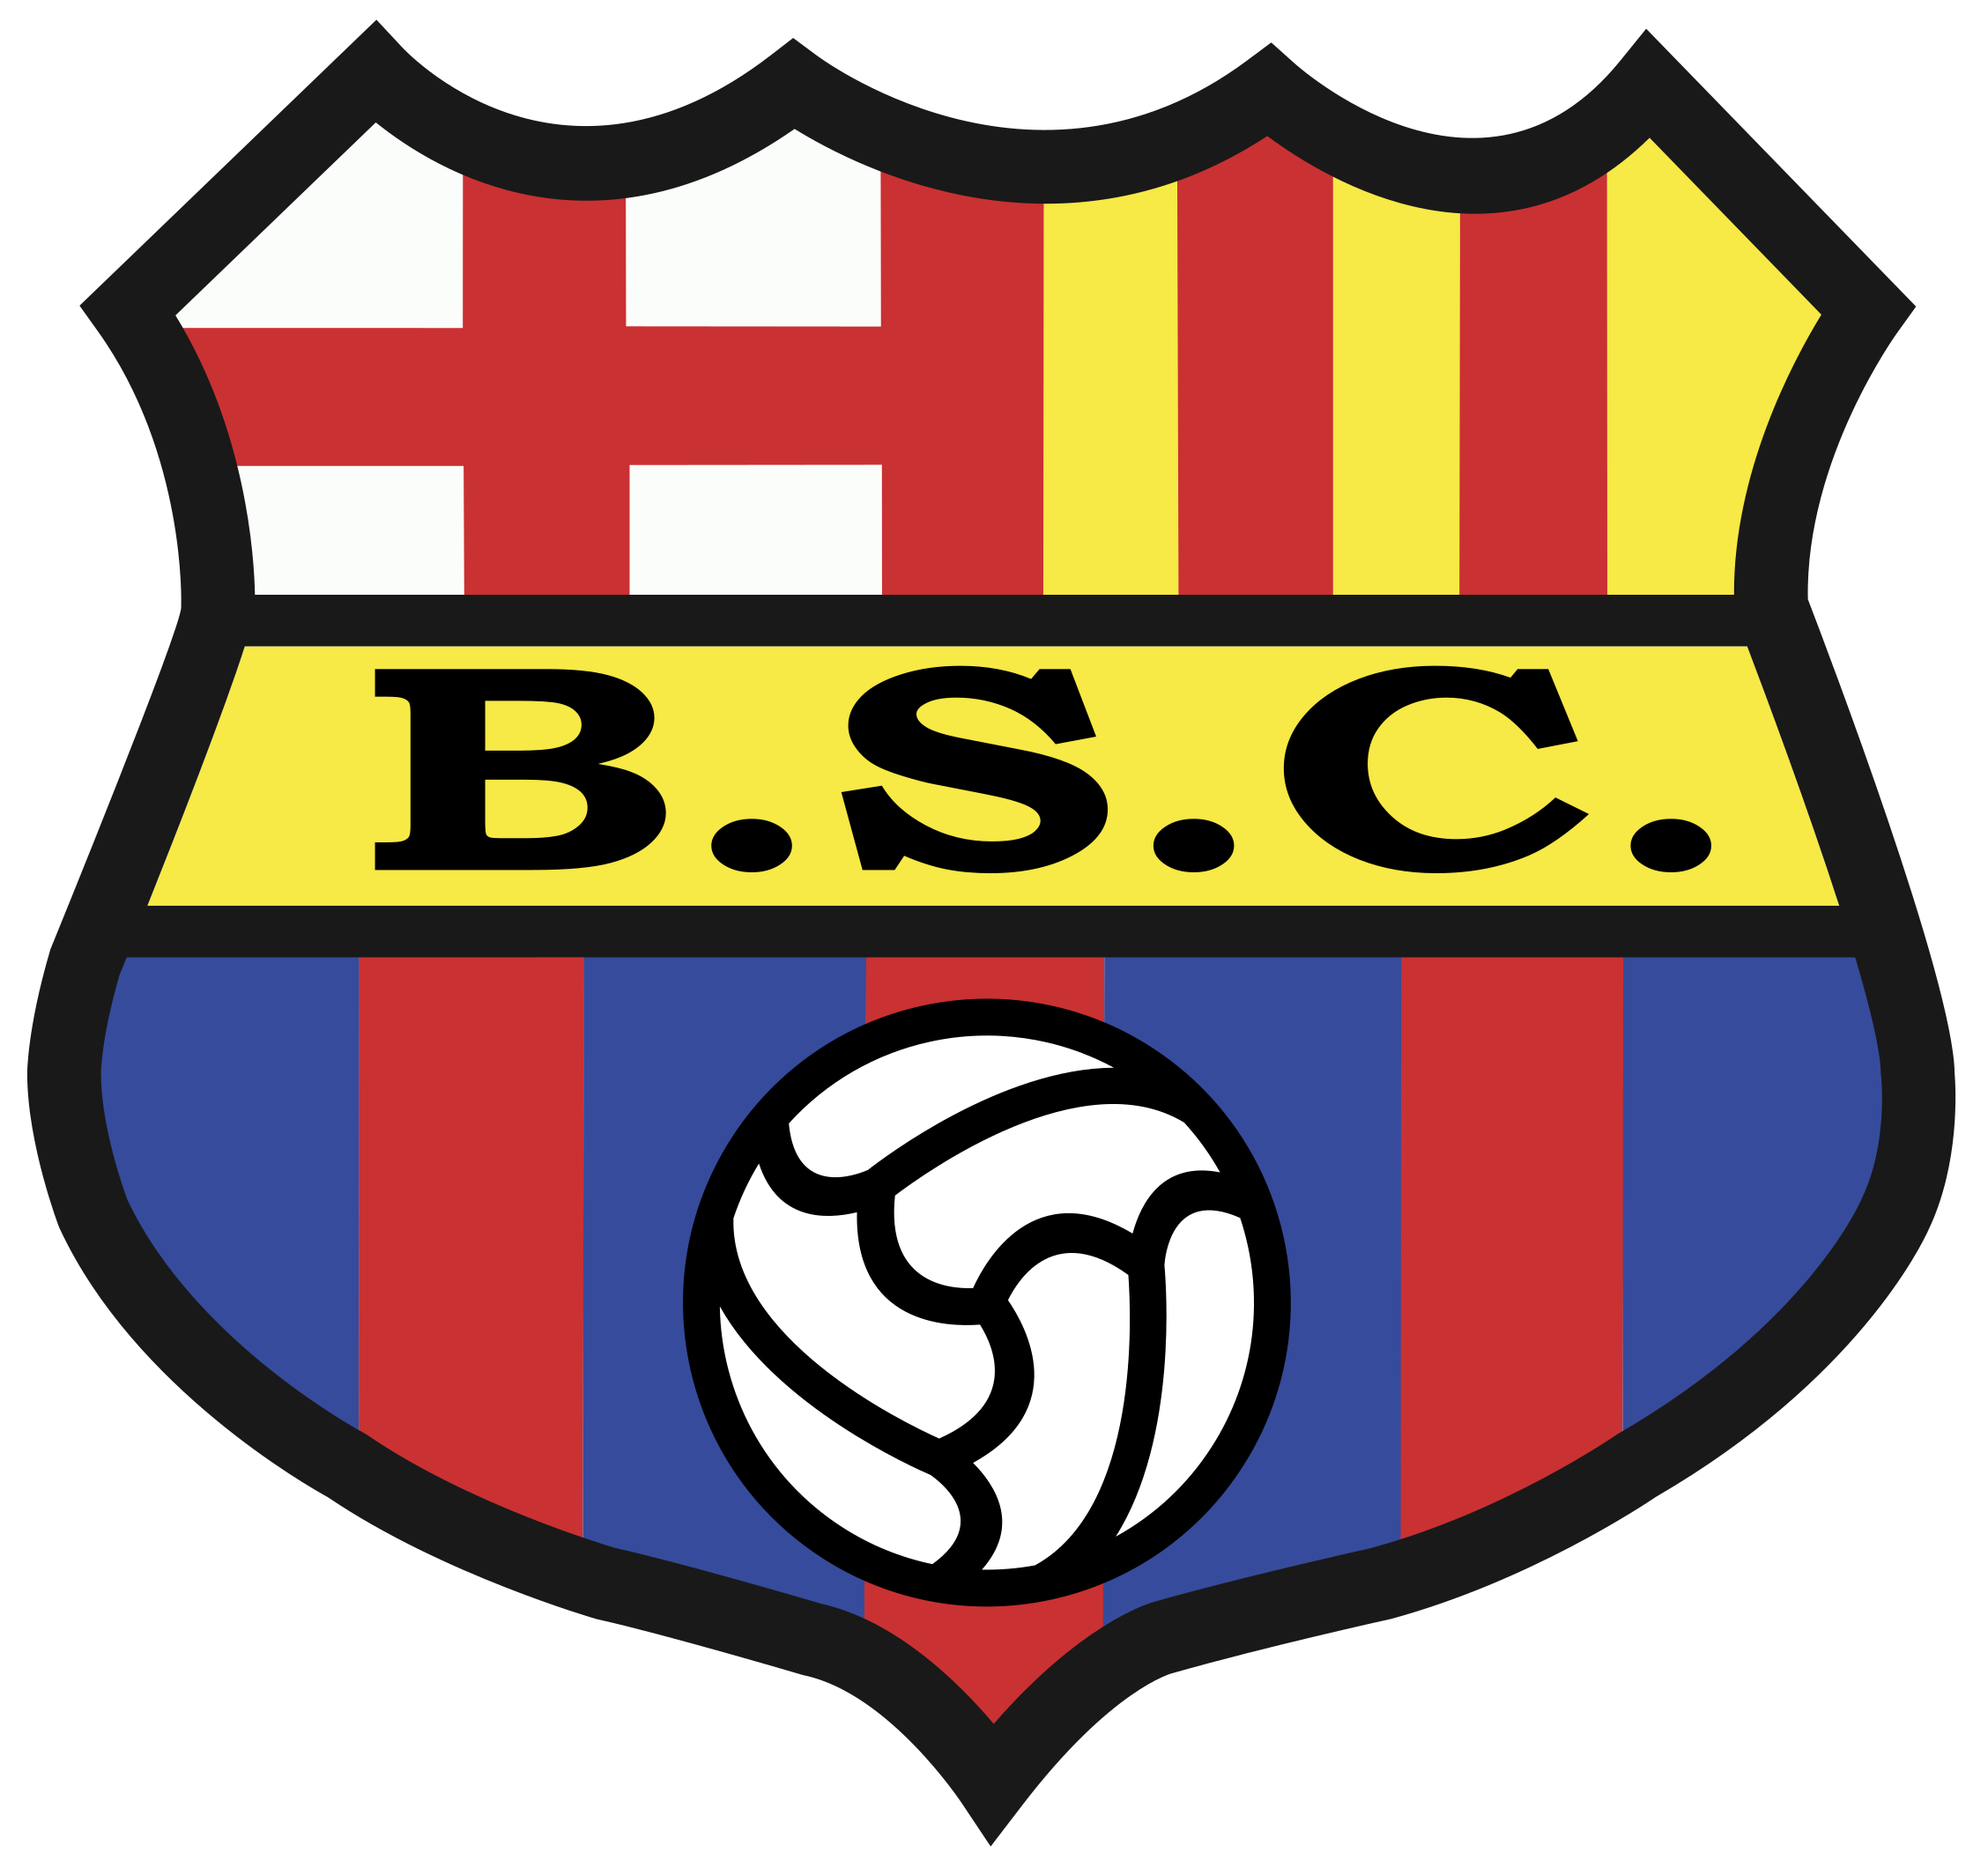 Barcelona SC vs Talleres Cordoba Prediction: Can Talleres show their dominance over Barcelona SC?